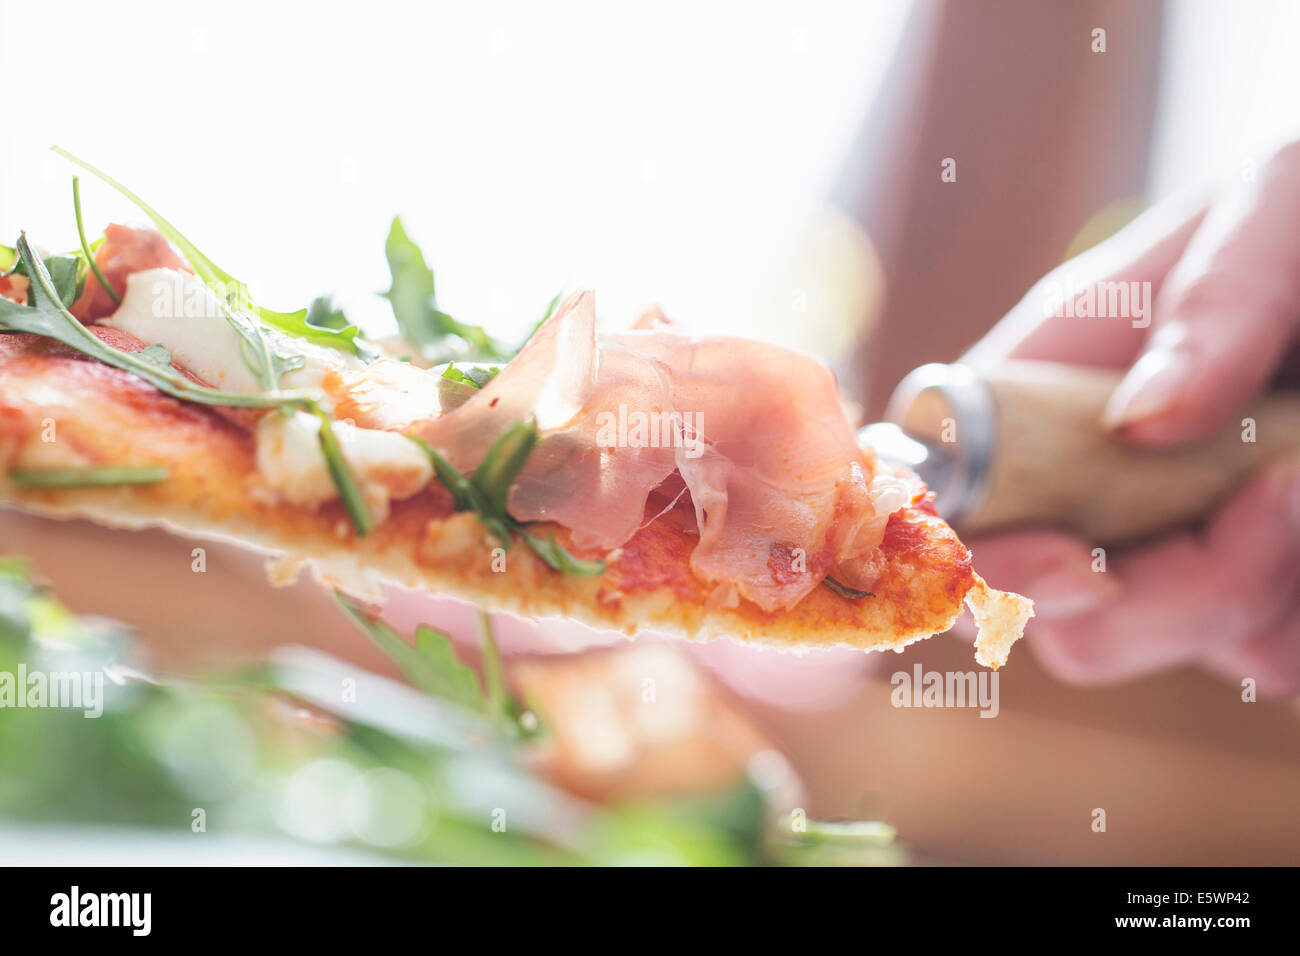 Nahaufnahme von weiblicher Hand mit Pizzastück auf Spachtel abgeschnitten Stockfoto